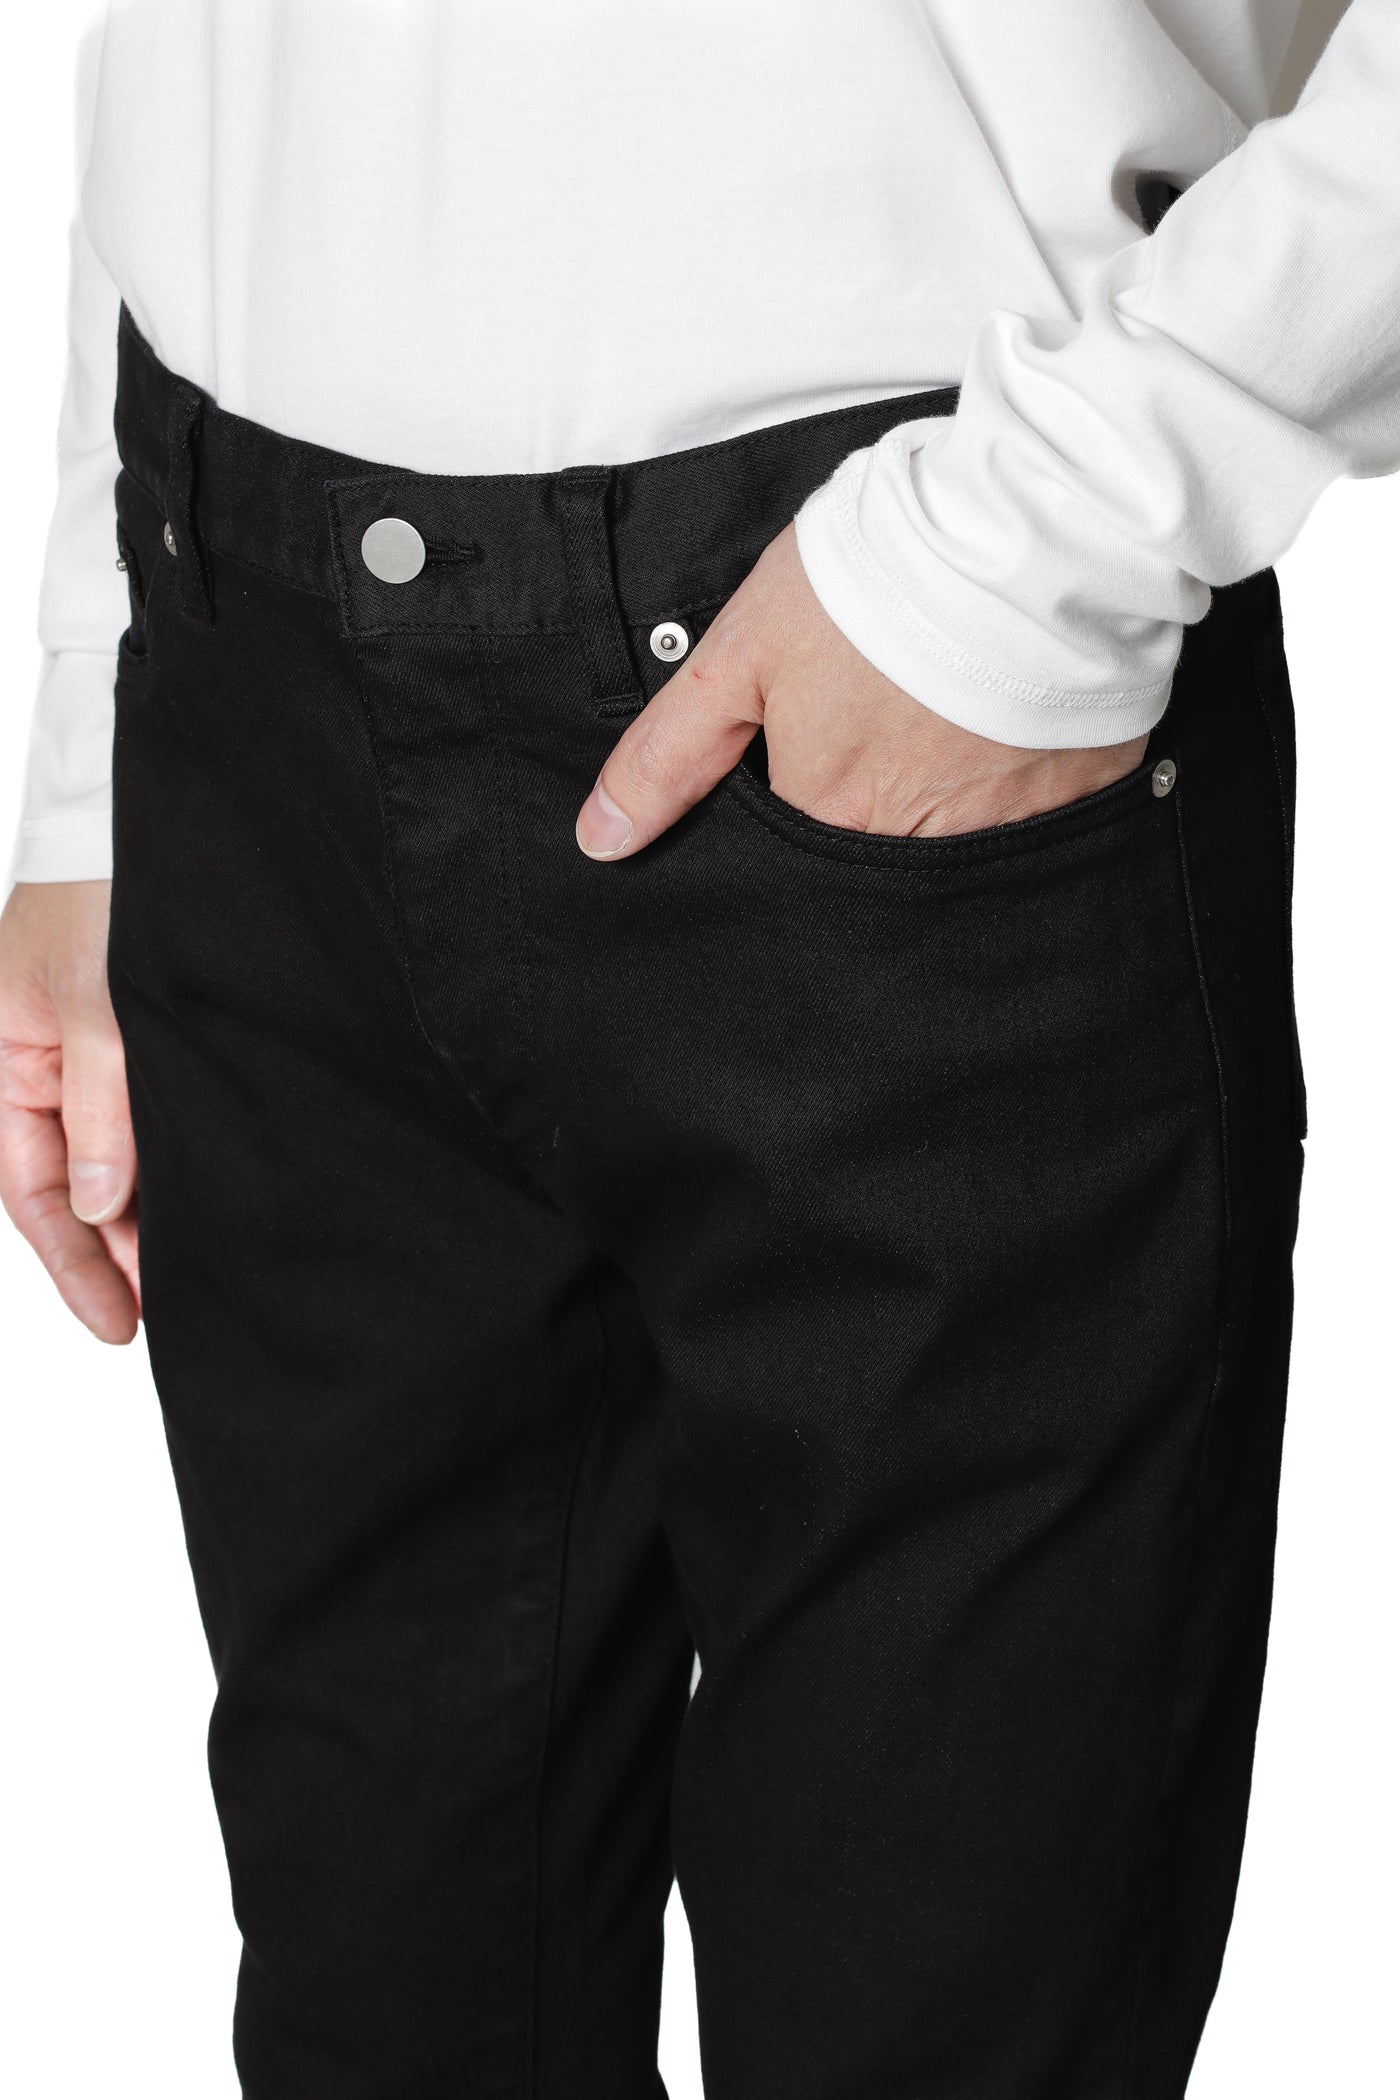 限量产品 AP32-099 苏比马棉弹力 5 口袋紧身裤 (黑色)